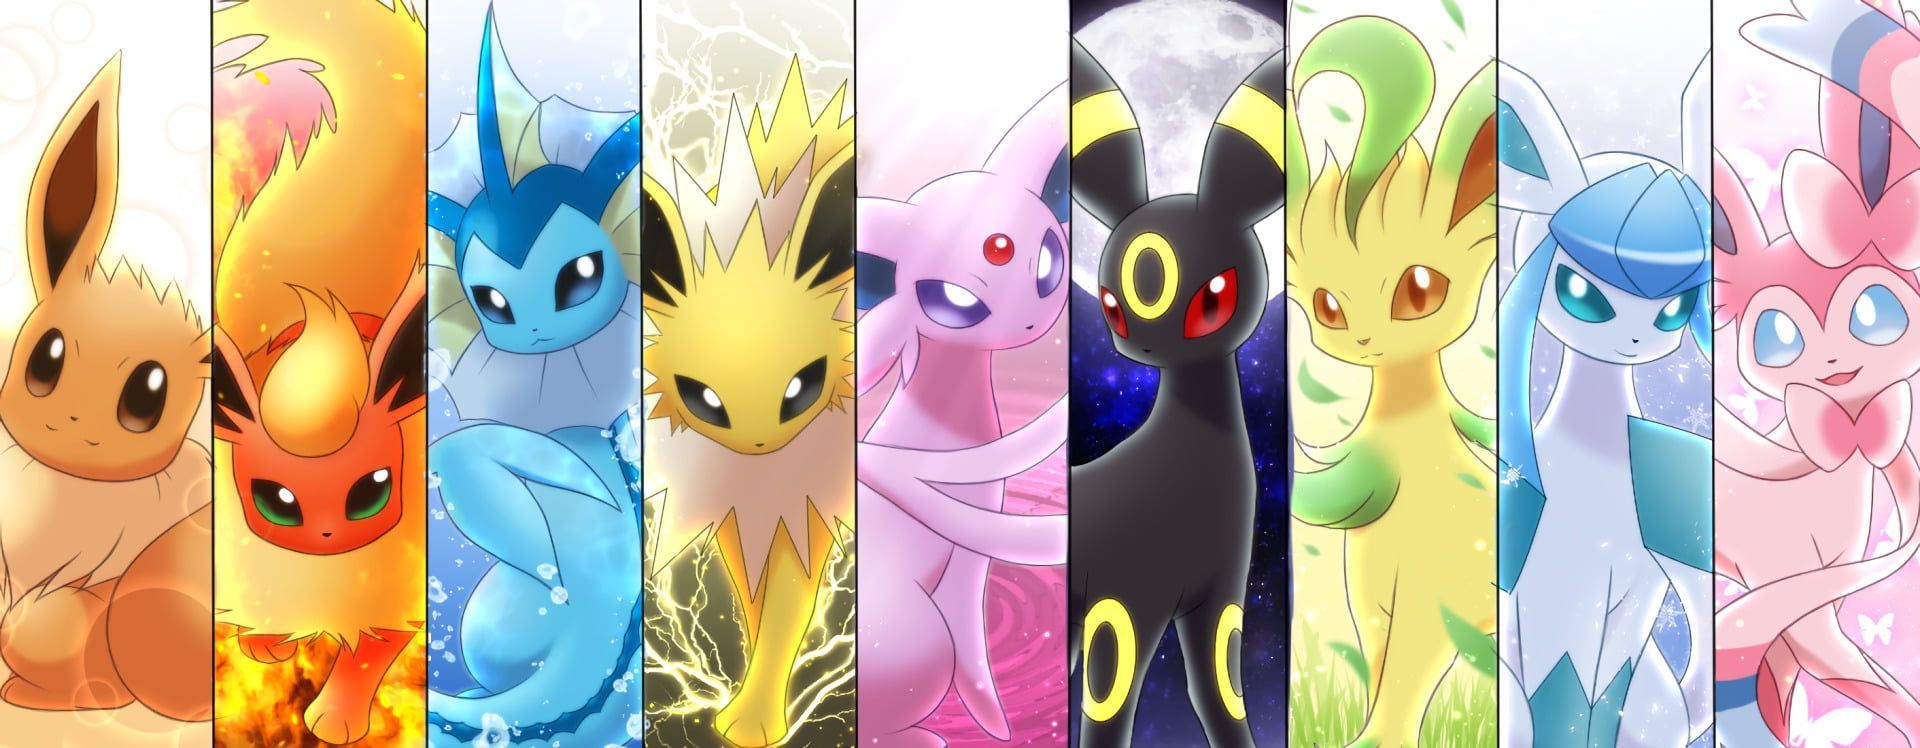 Pokemon character collage #Pokémon Eevee (Pokémon) #Eeveelutions Espeon ( Pokémon) Flareon (Pokémon) Gl. Evoluciones de eevee, Dibujos de pokemon, Fotos de pokemon